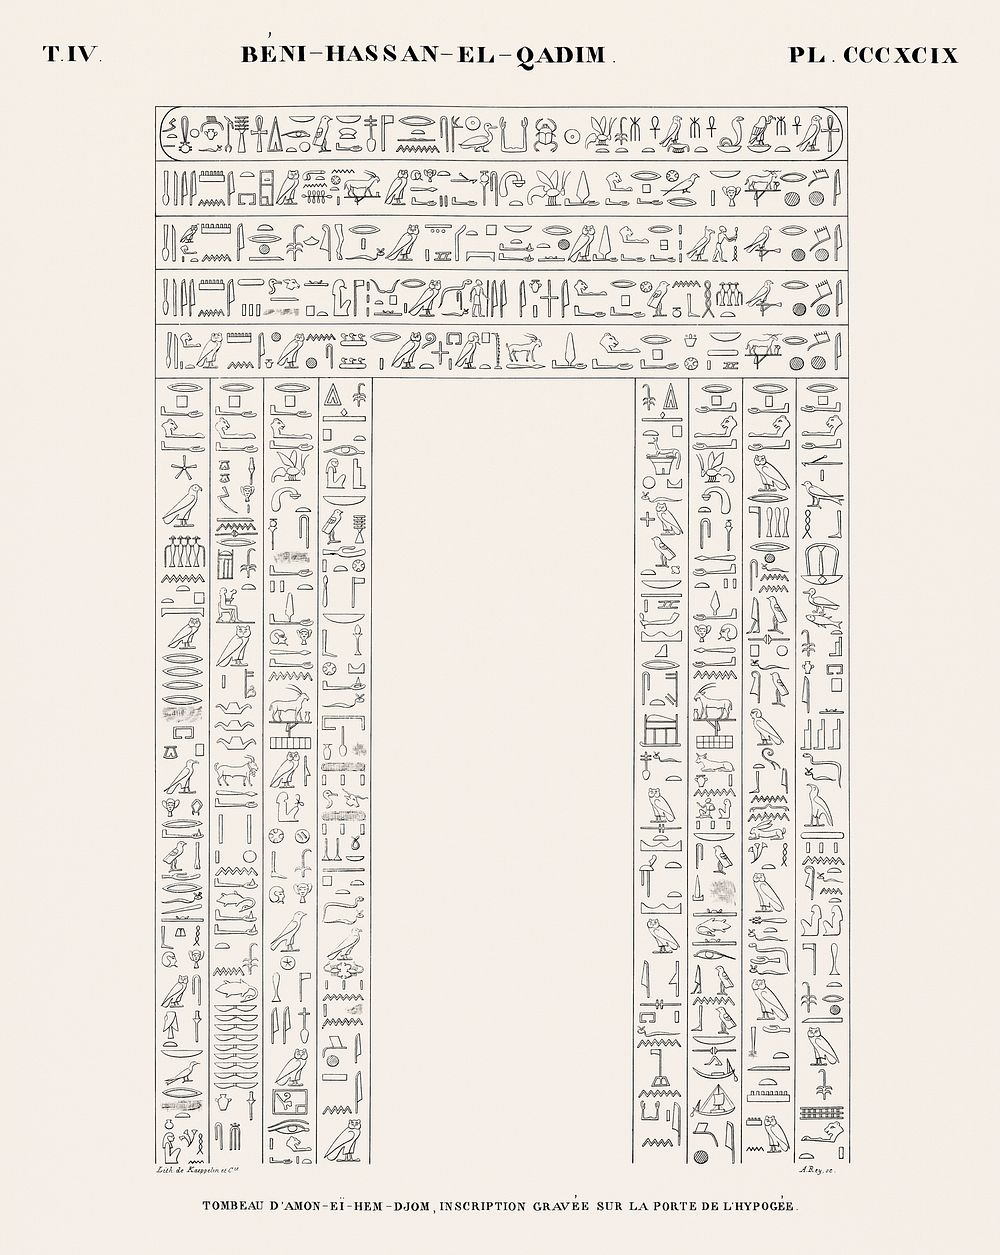 Tomb of Amon-ei-hem-djom, engraved inscription on the door of the hypogeum from Monuments de l'&Eacute;gypte et de la Nubie…